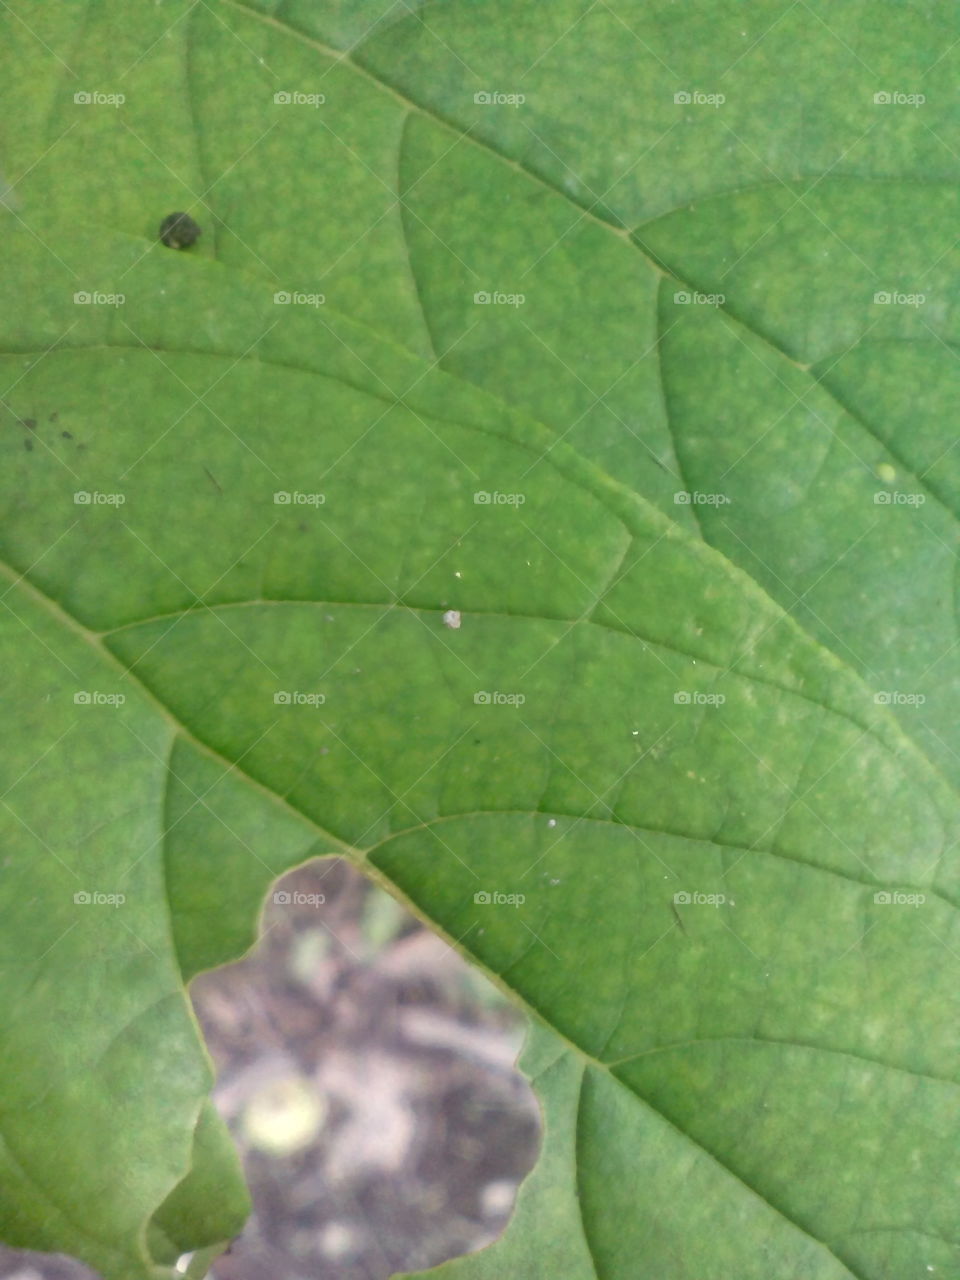 leaf foap!!!